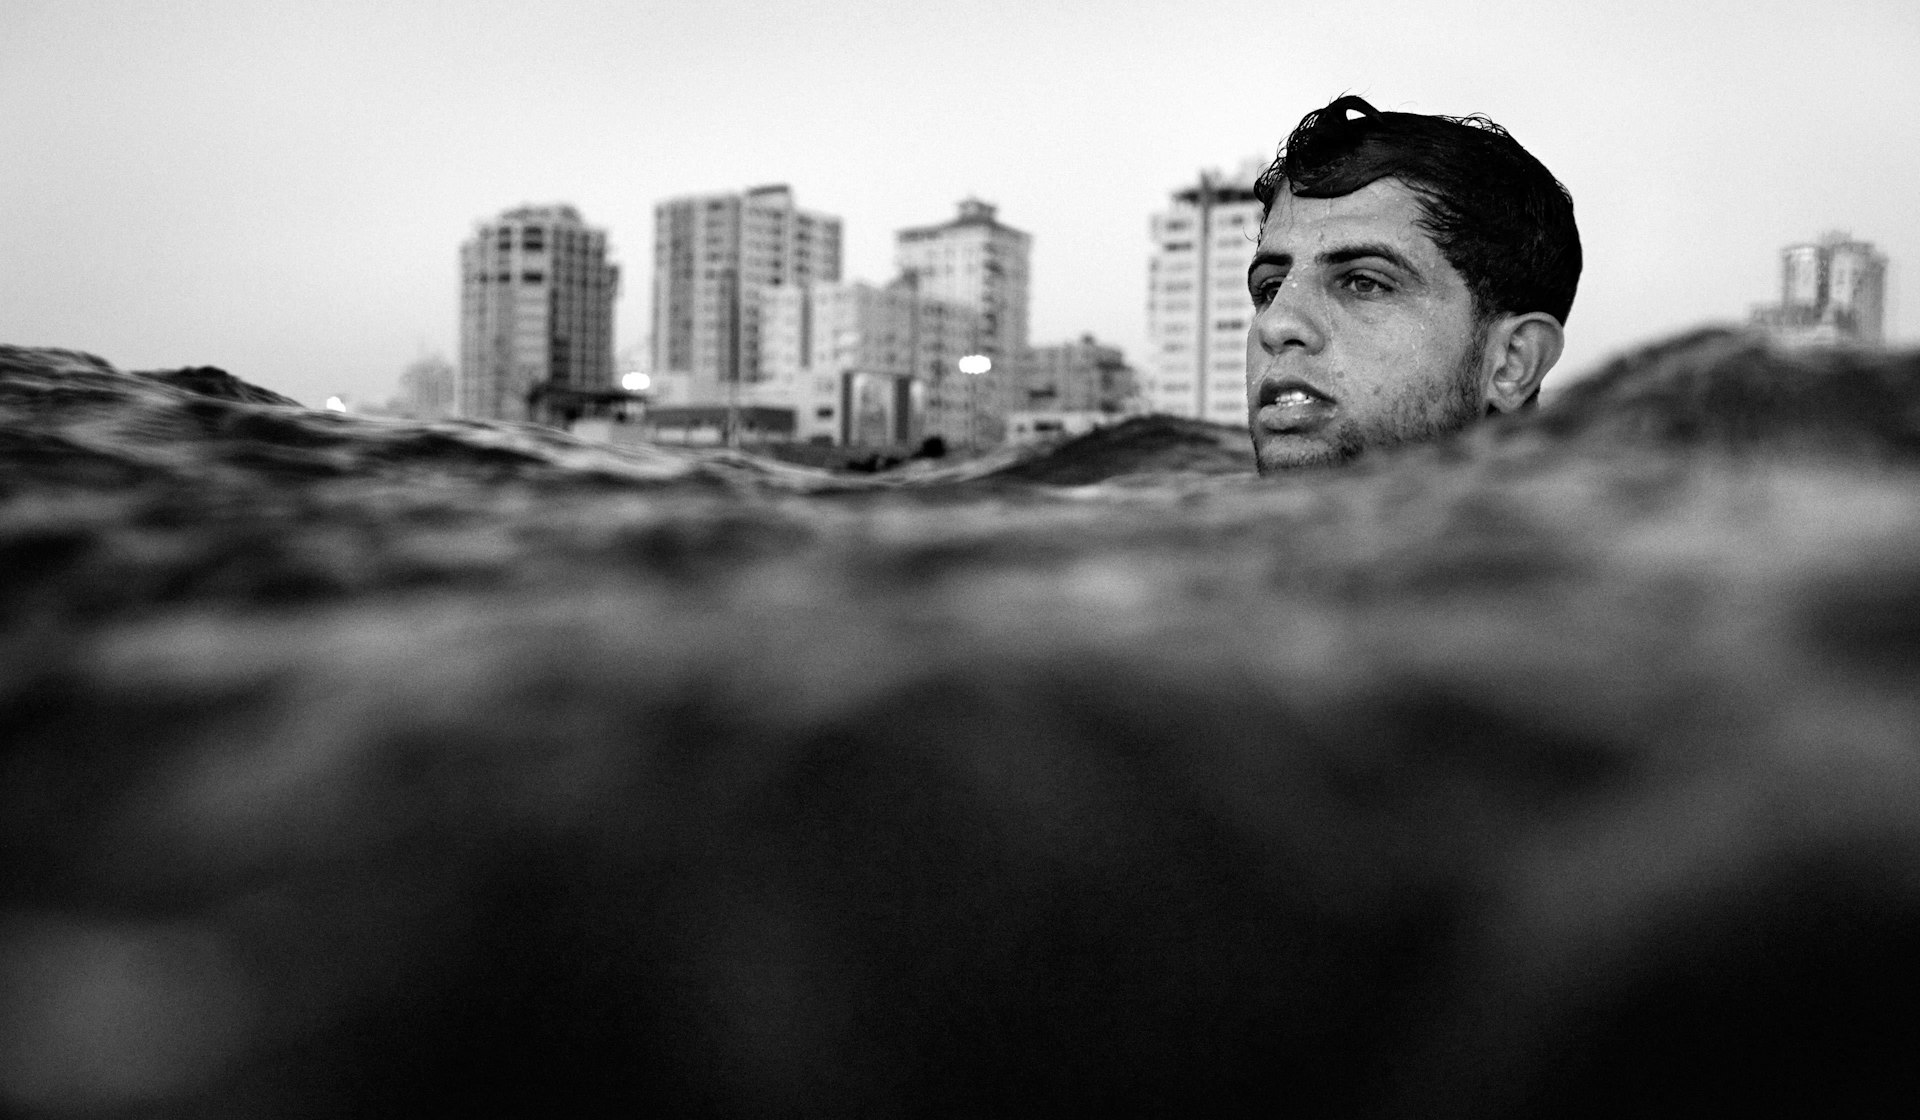 Finding freedom through surfing in war-torn Gaza